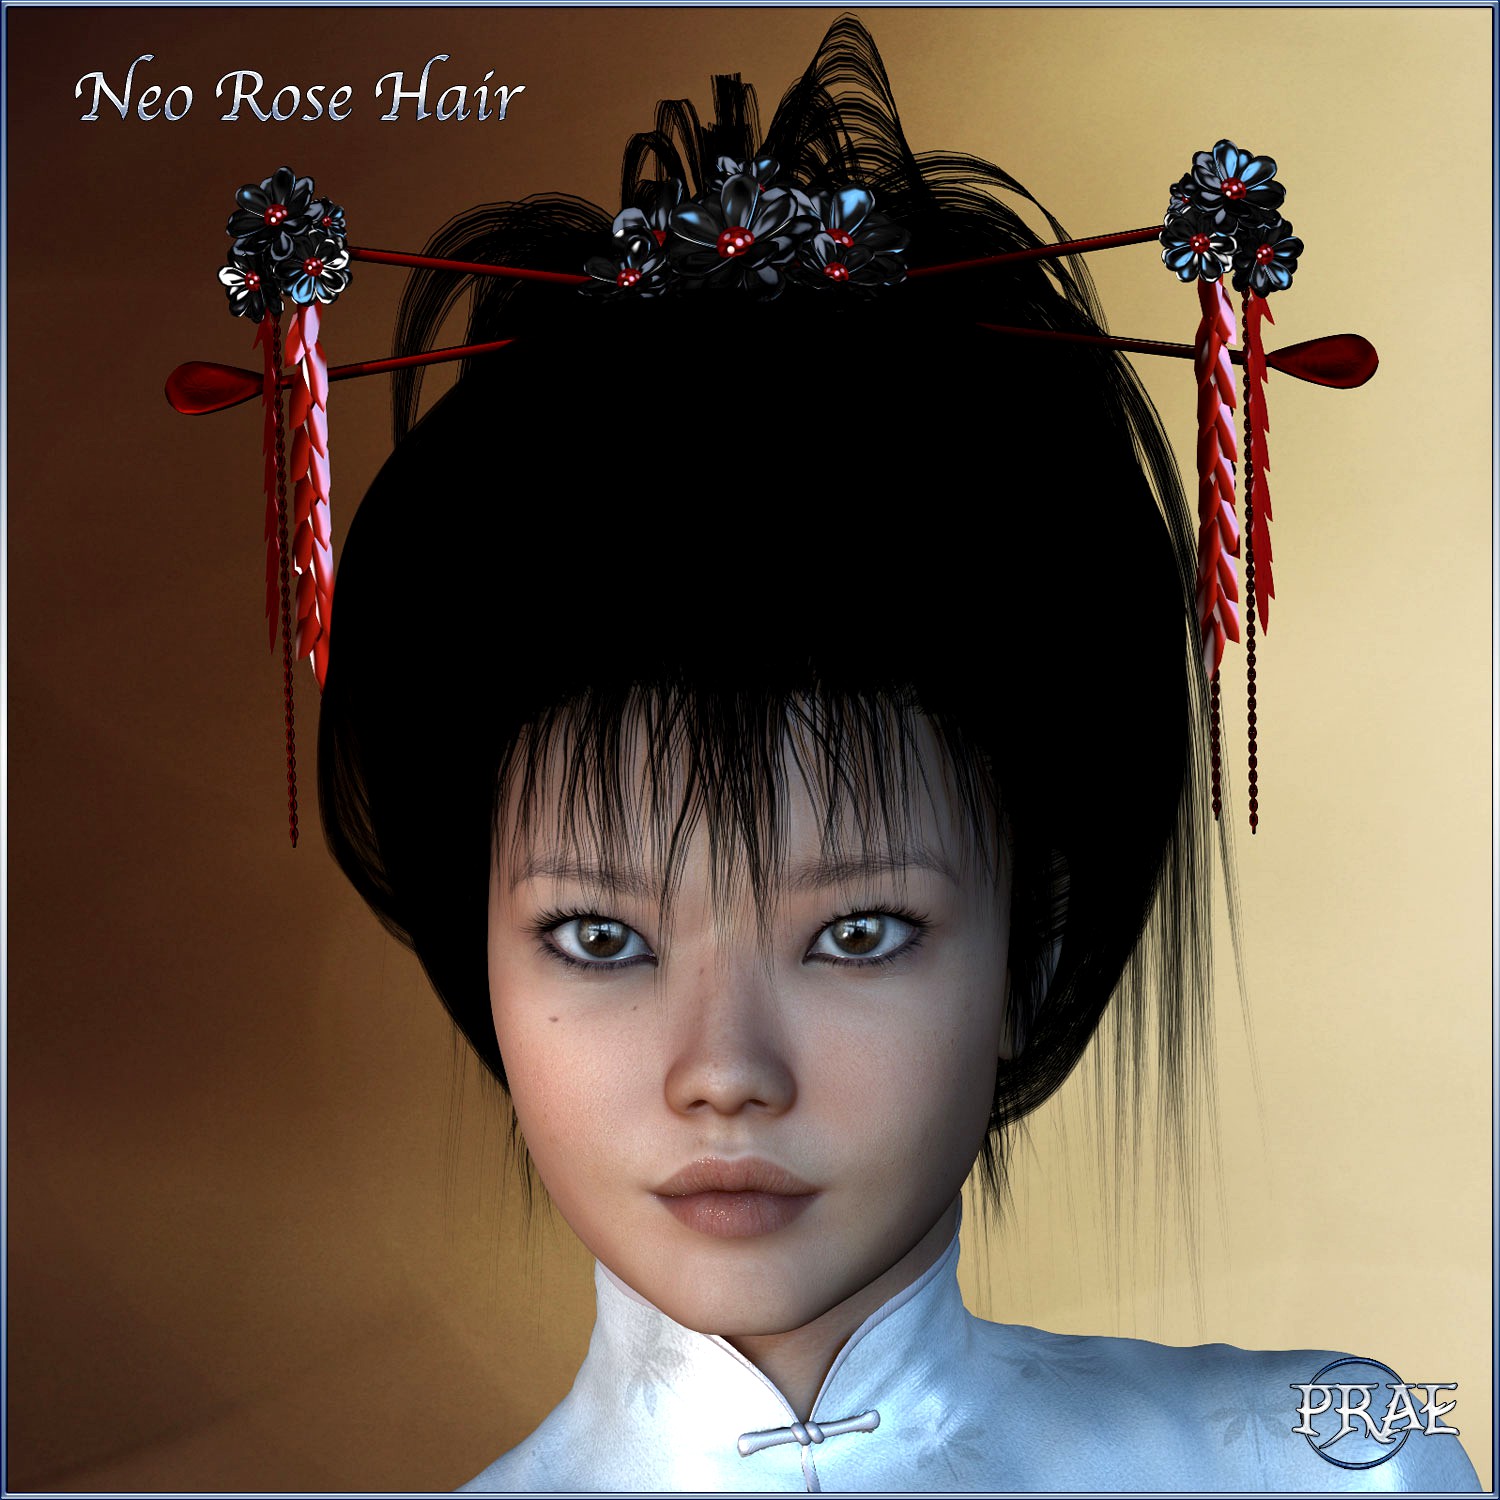 Prae-Neo Rose Hair for V4 Poser